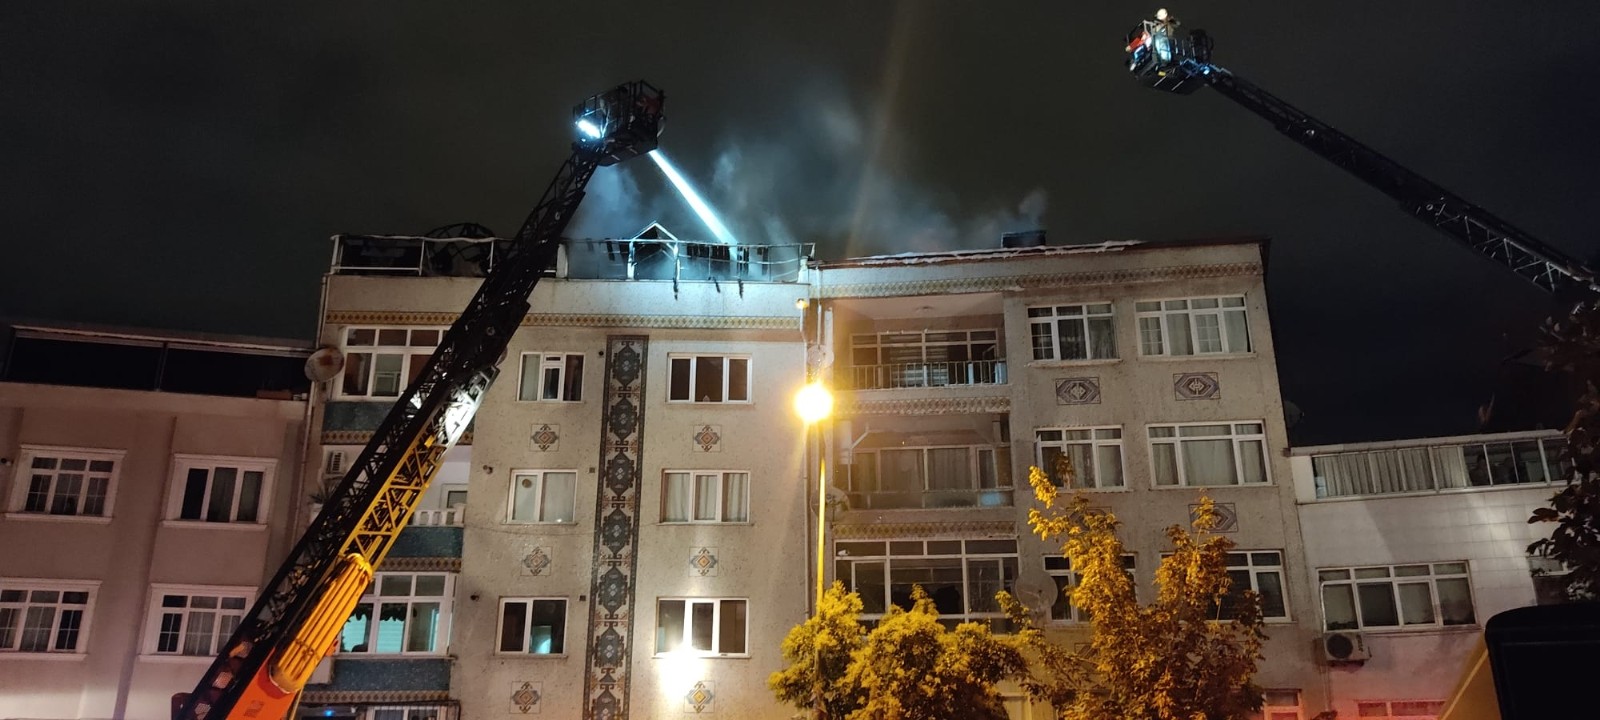 Eyüpsultan’da bir binanın çatısı alev alev yandı, mahalle sakinleri sokağa döküldü